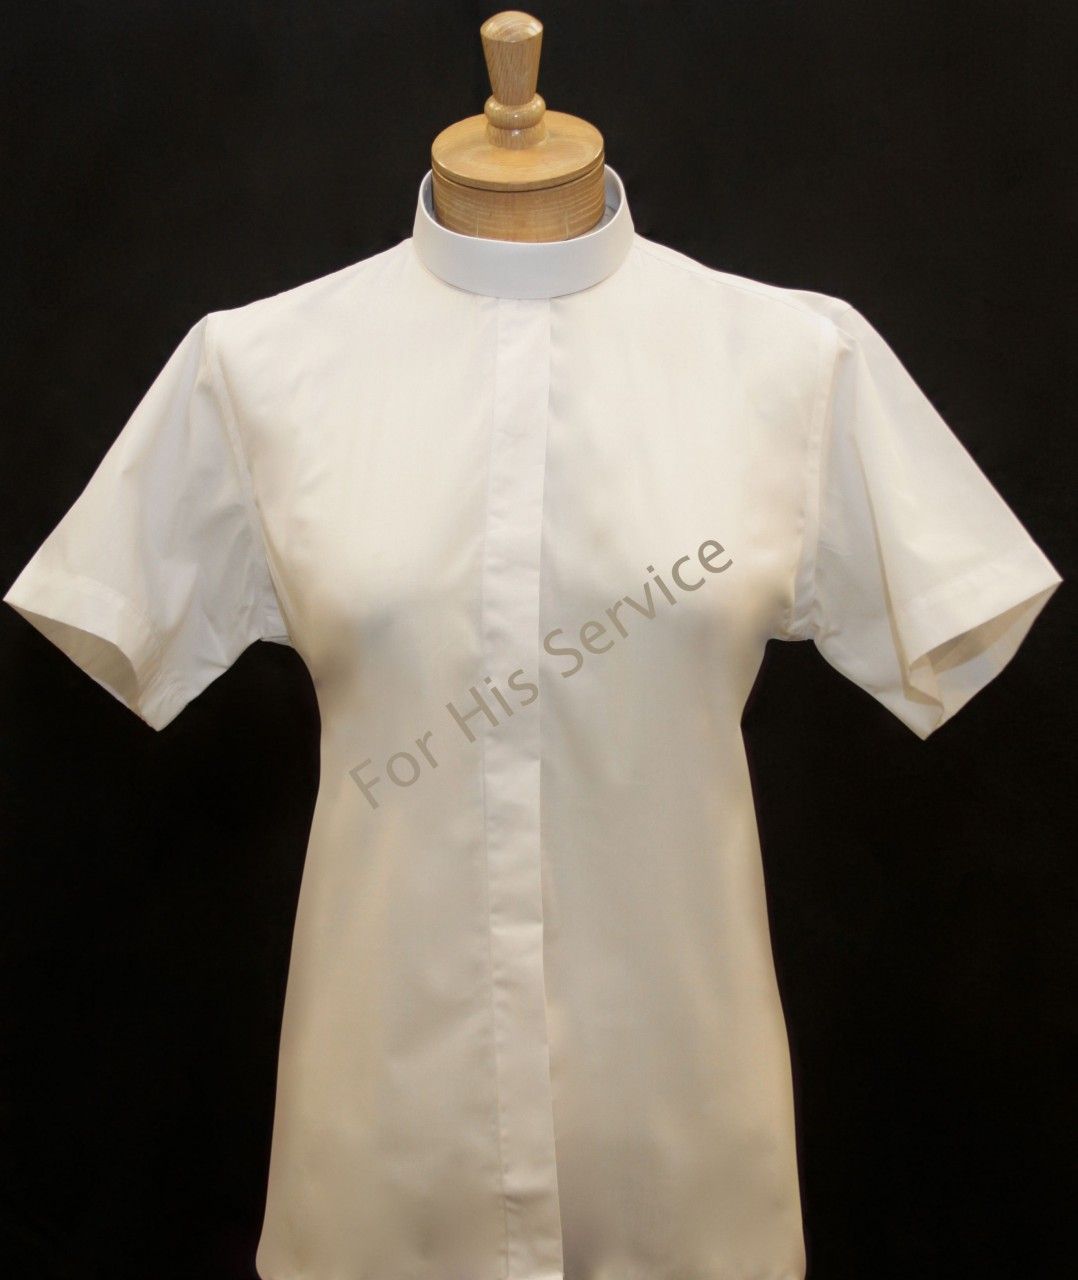 653. Women's Short-Sleeve (Banded) Full-Collar Clergy Shirt - White